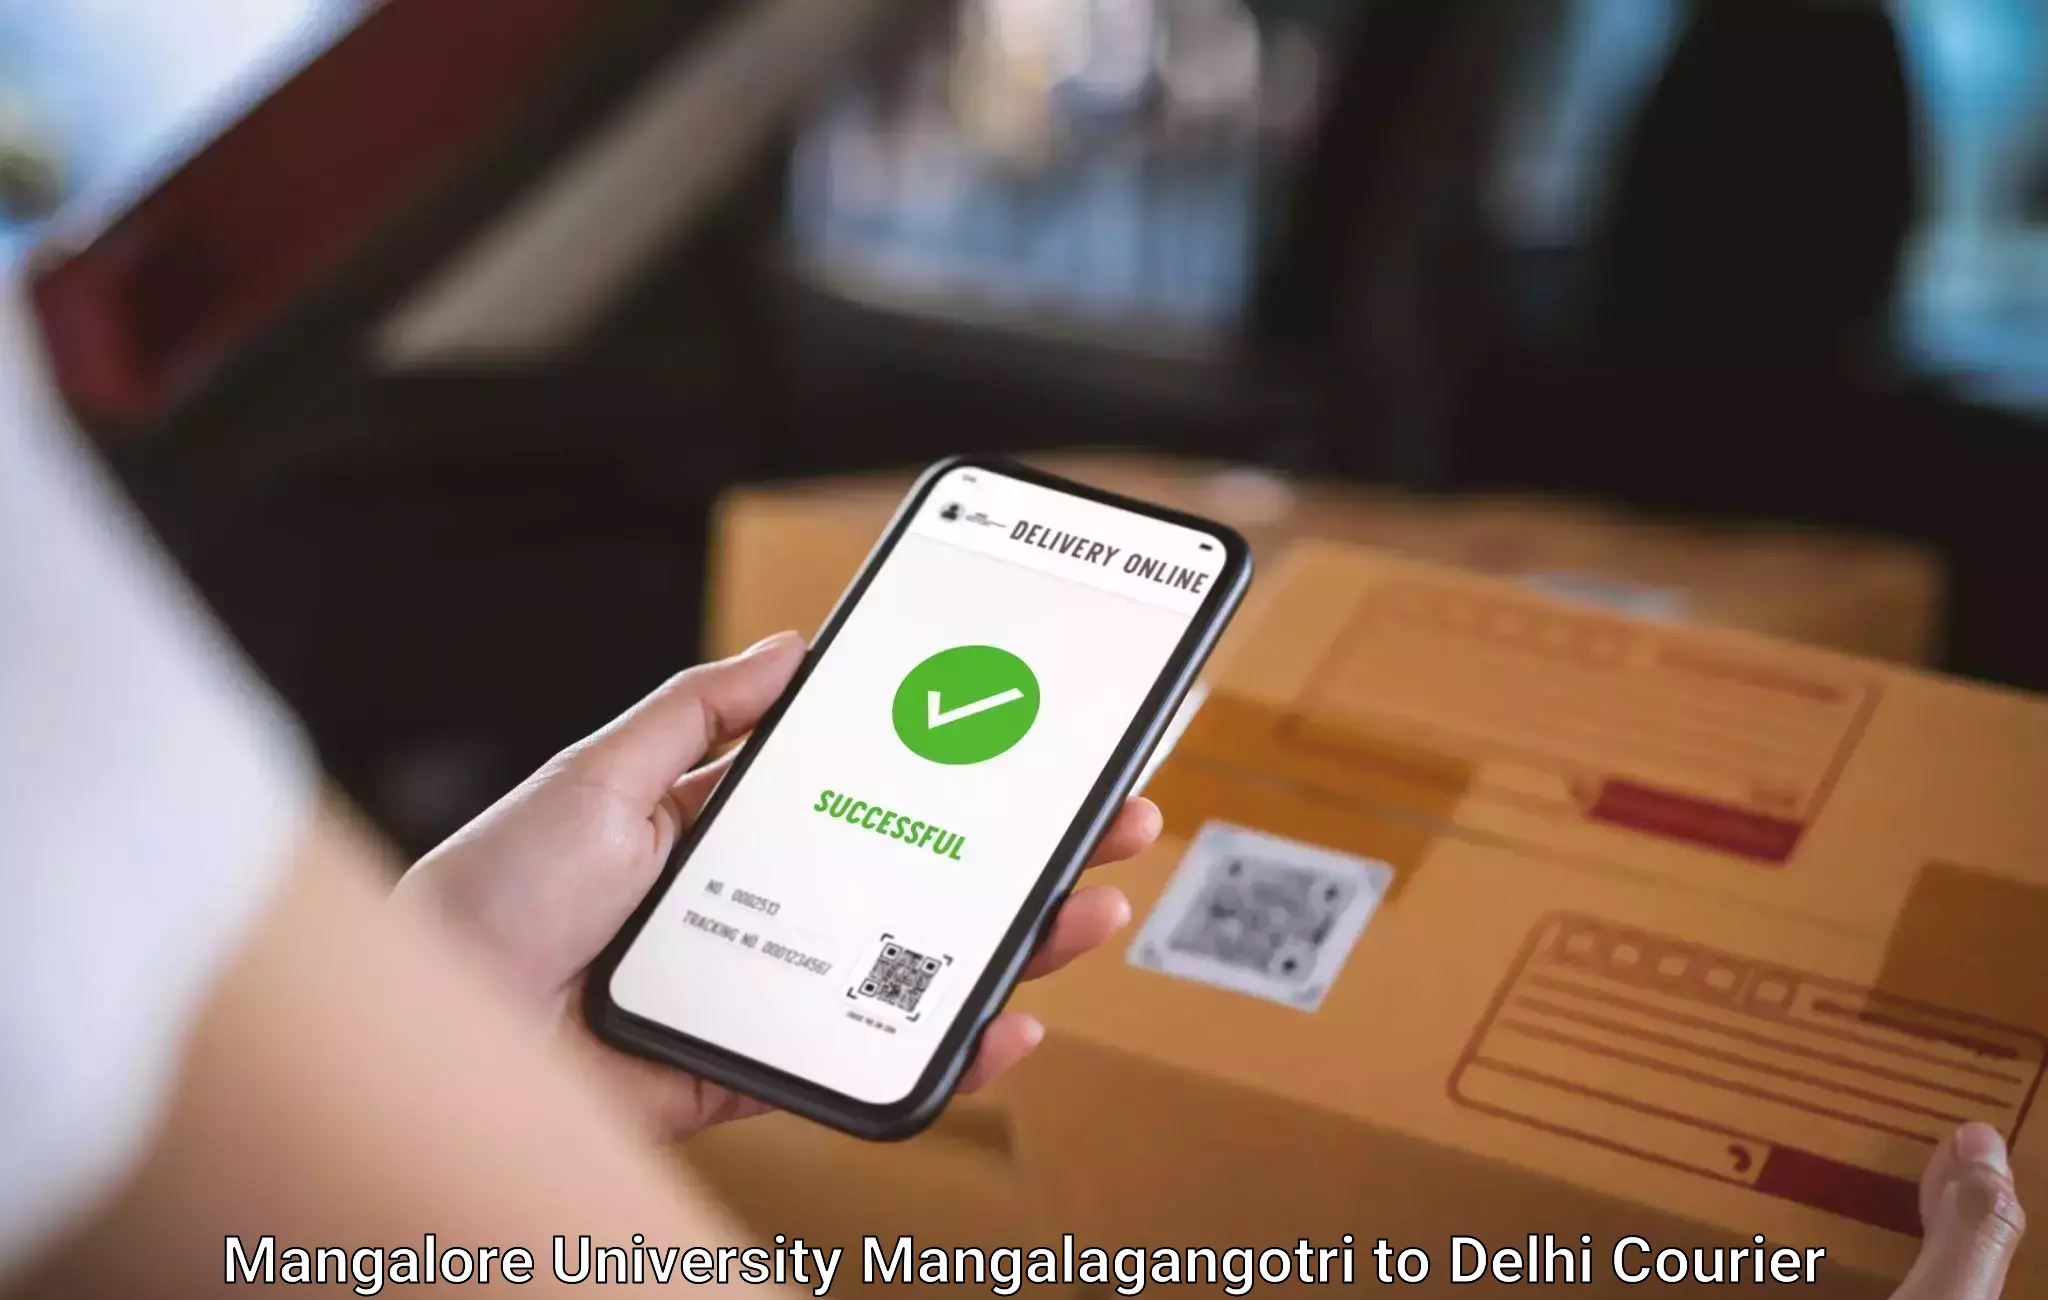 Baggage shipping advice Mangalore University Mangalagangotri to East Delhi